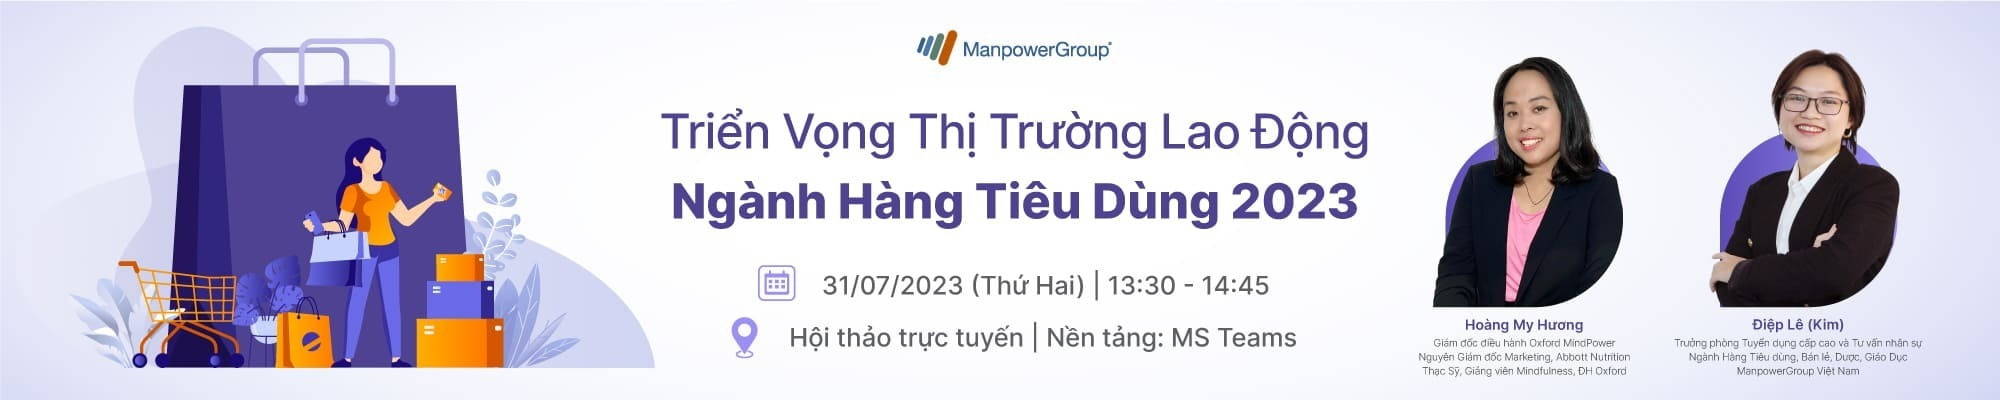 hội thảo trực tuyến triển vọng thị trường lao động ngành hàng tiêu dùng manpowergroup việt nam